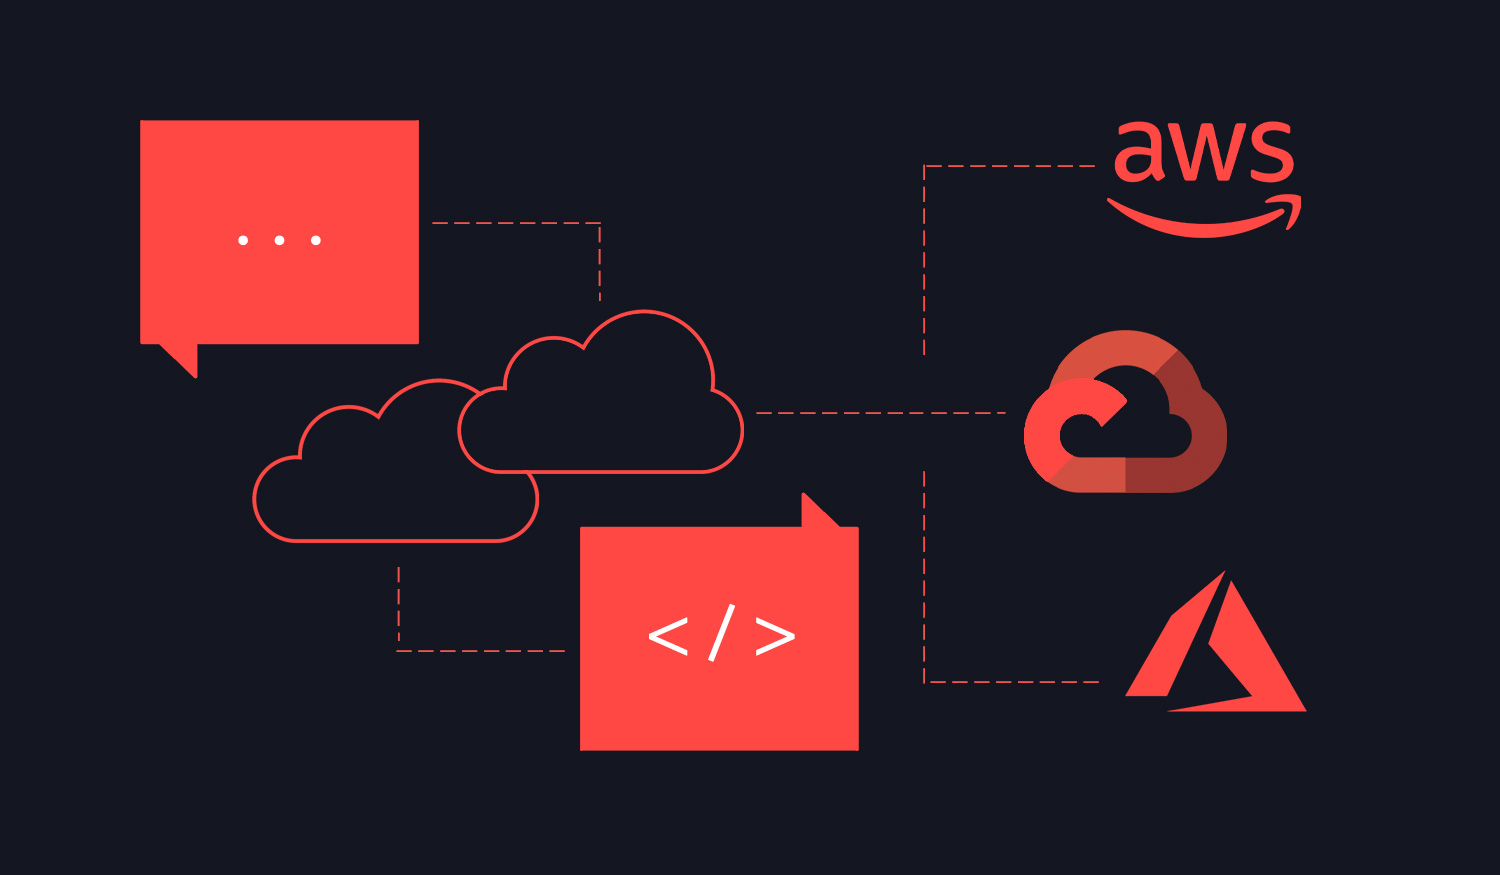 Cloud-native: A modern approach to software development